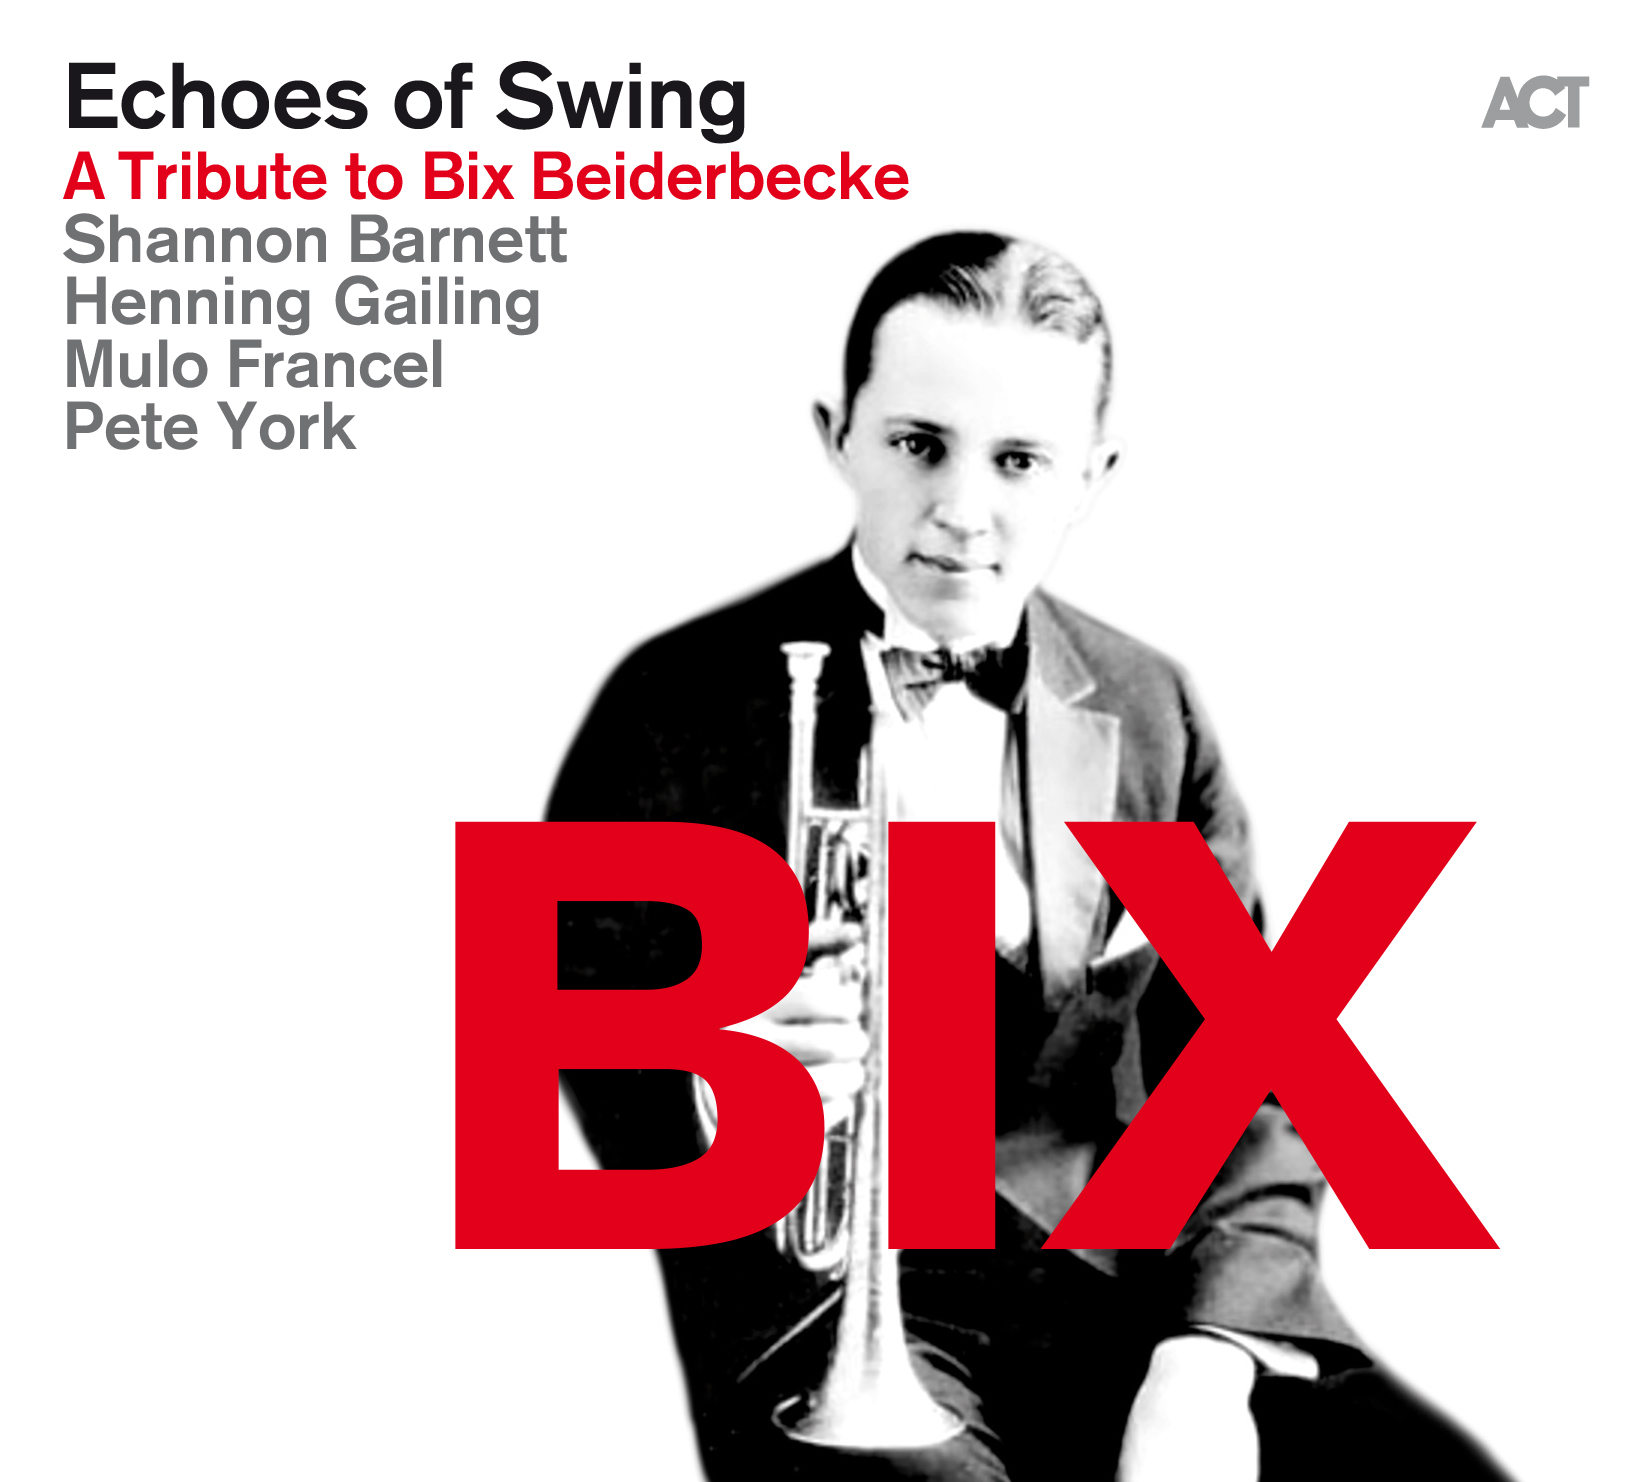 BIX - A Tribute to Bix Beiderbecke